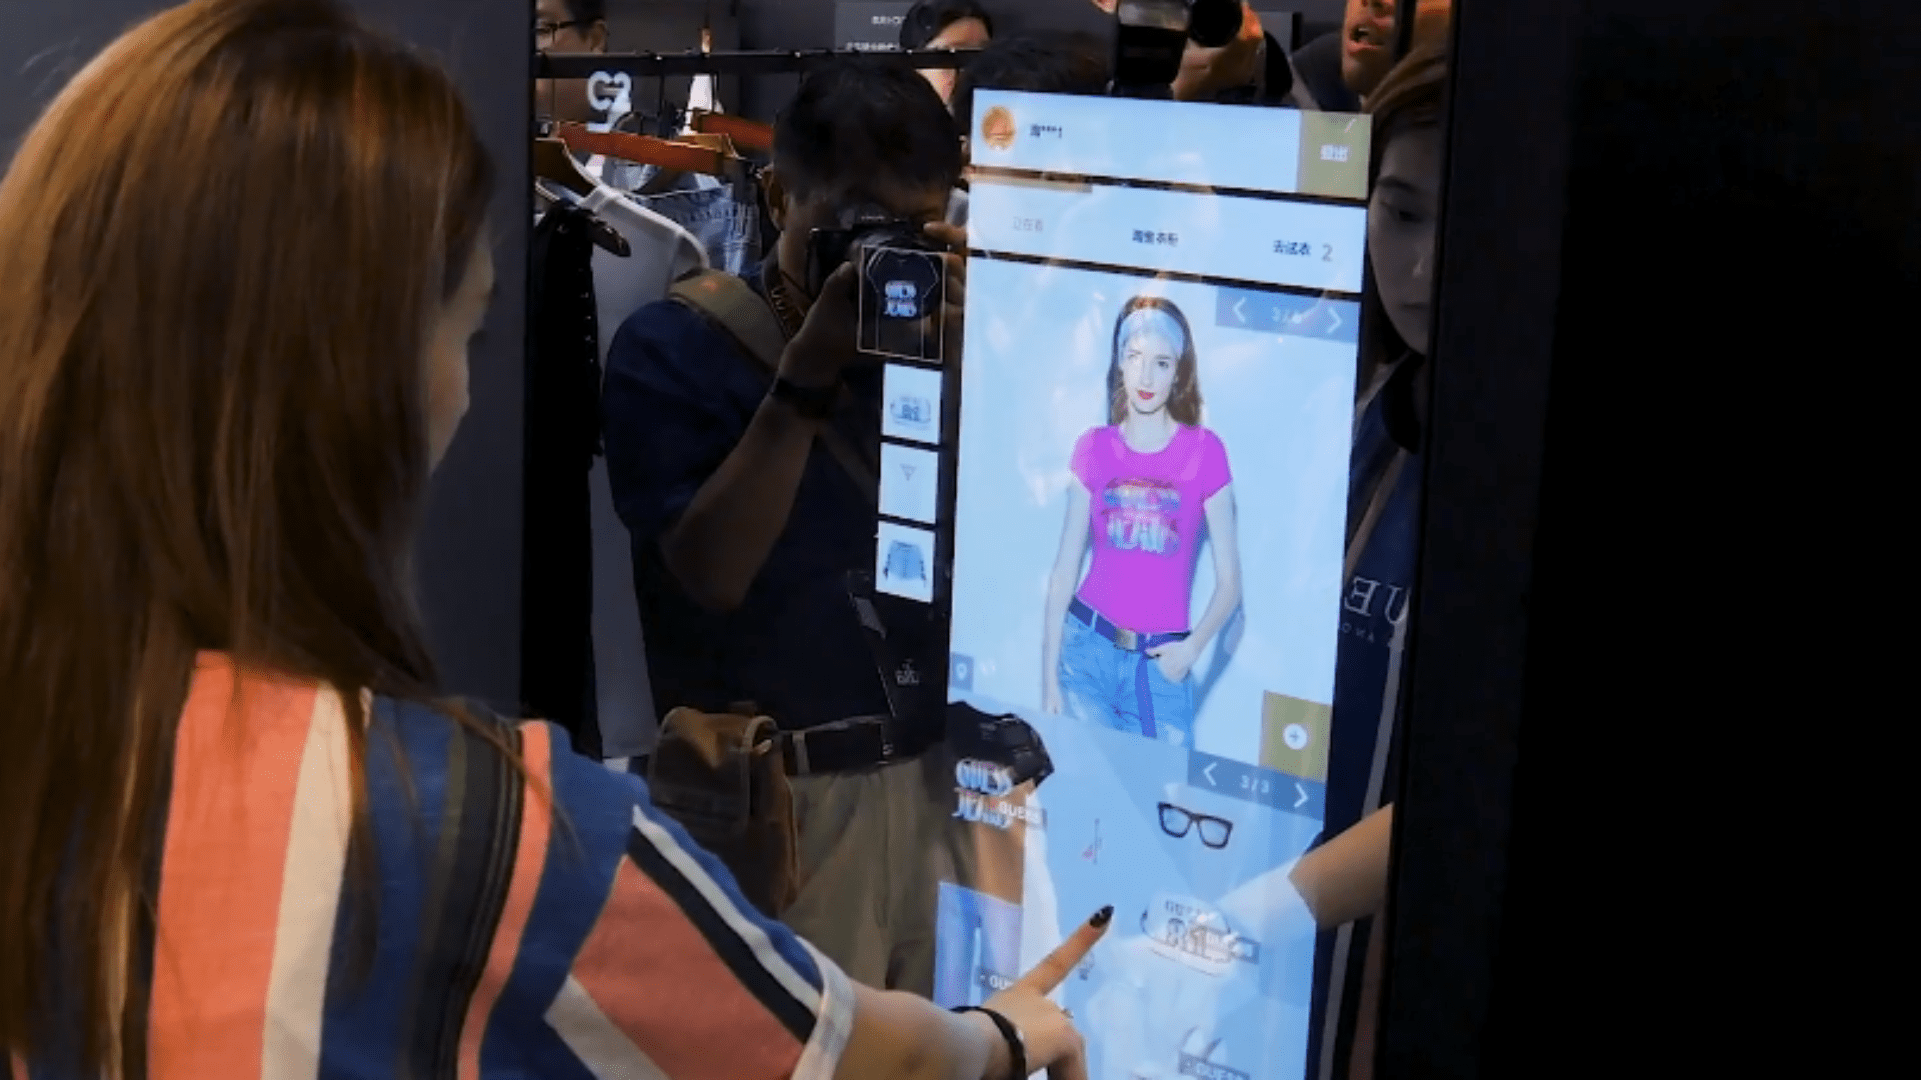 Nesta imagem podemos ver uma mulher escolhendo as roupas por meio de inteligência artificial.A inteligência artificial no marketing pode ser utilizada para te auxiliar a alcançar seus objetivos corporativos.